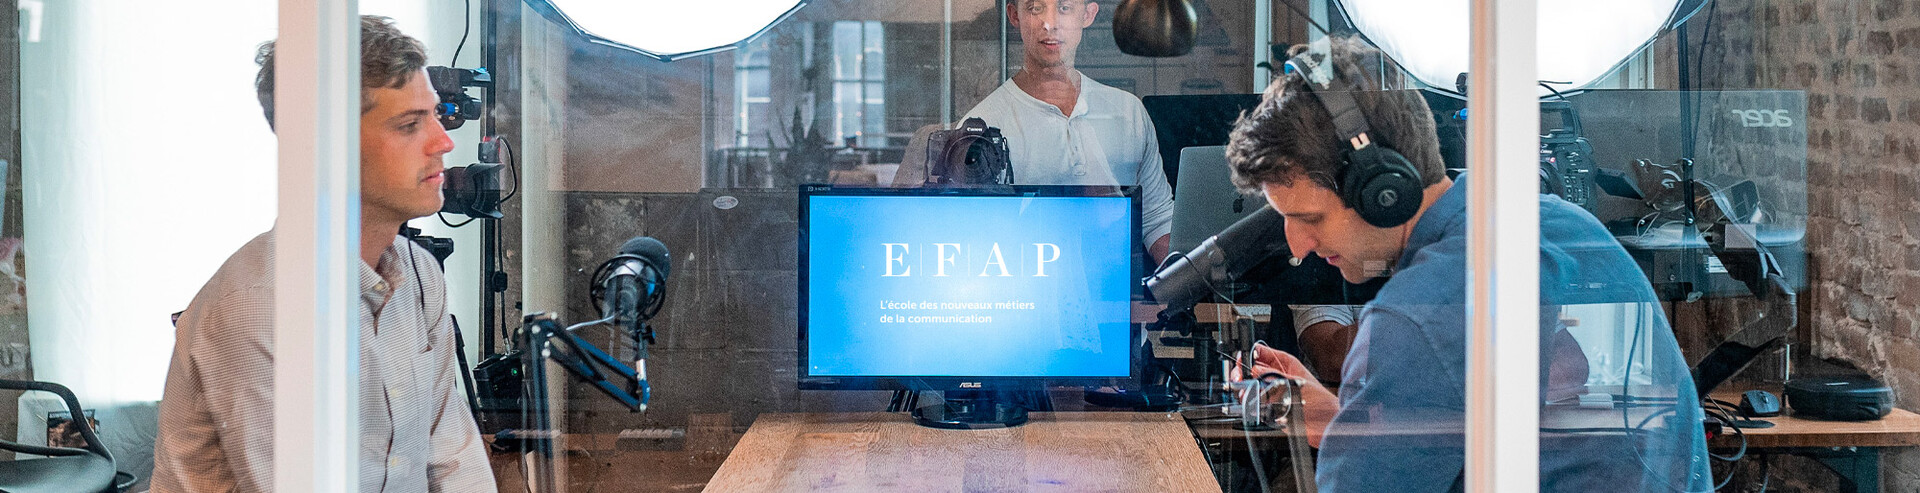 Ecole attachée presse - Formation attachées de presse EFAP